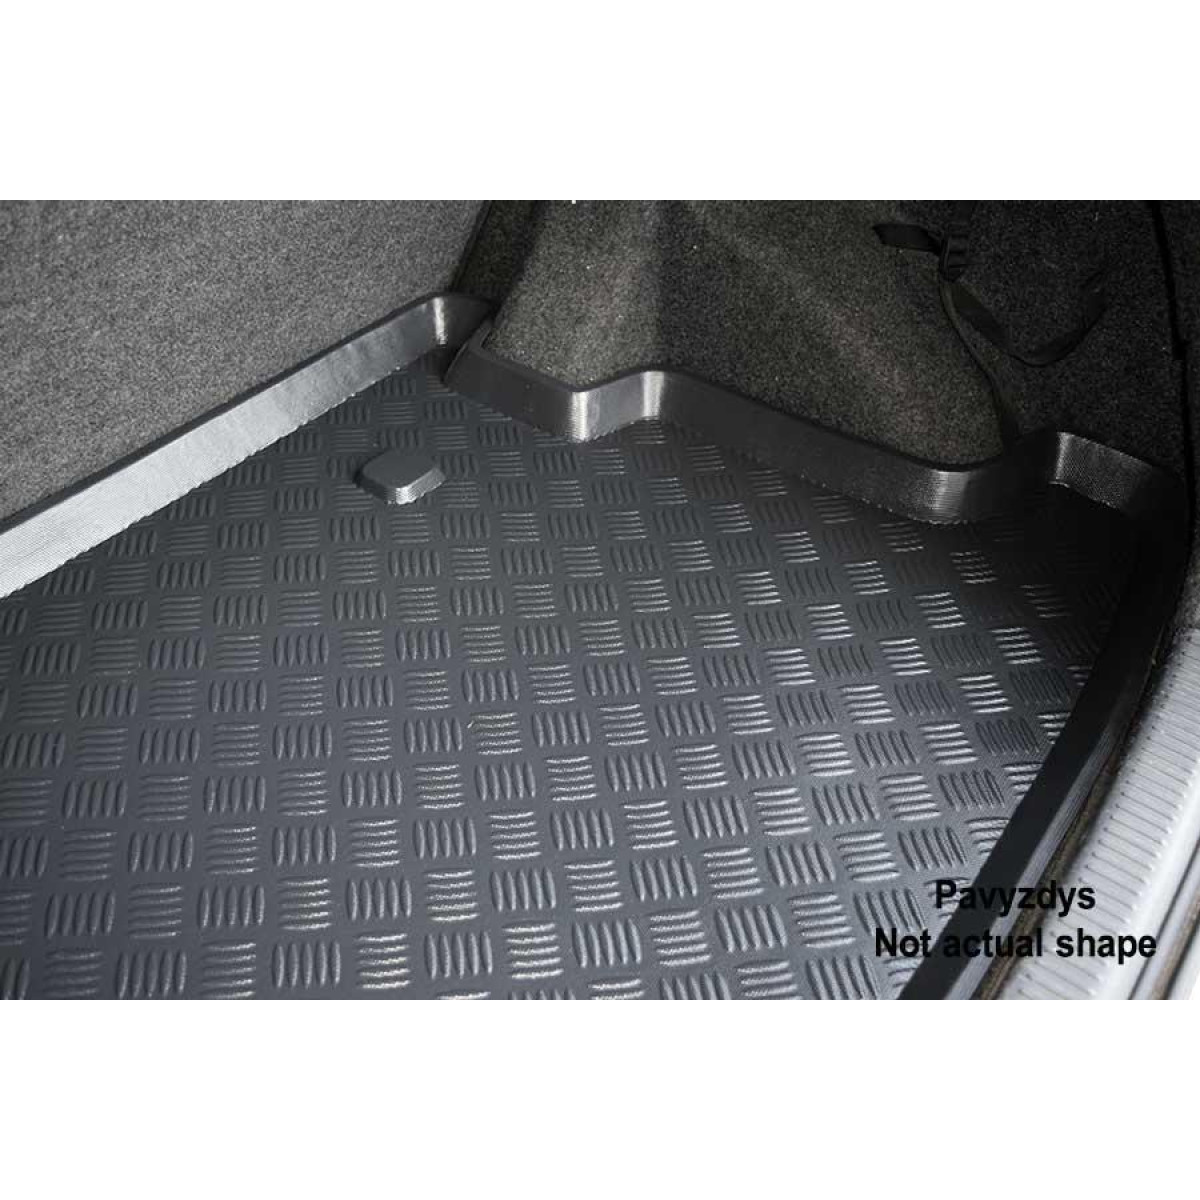 Plastikinis Bagažinės kilimėlis Daewoo Kalos/ Chevrolet Aveo hečbekas 2004-2006m.